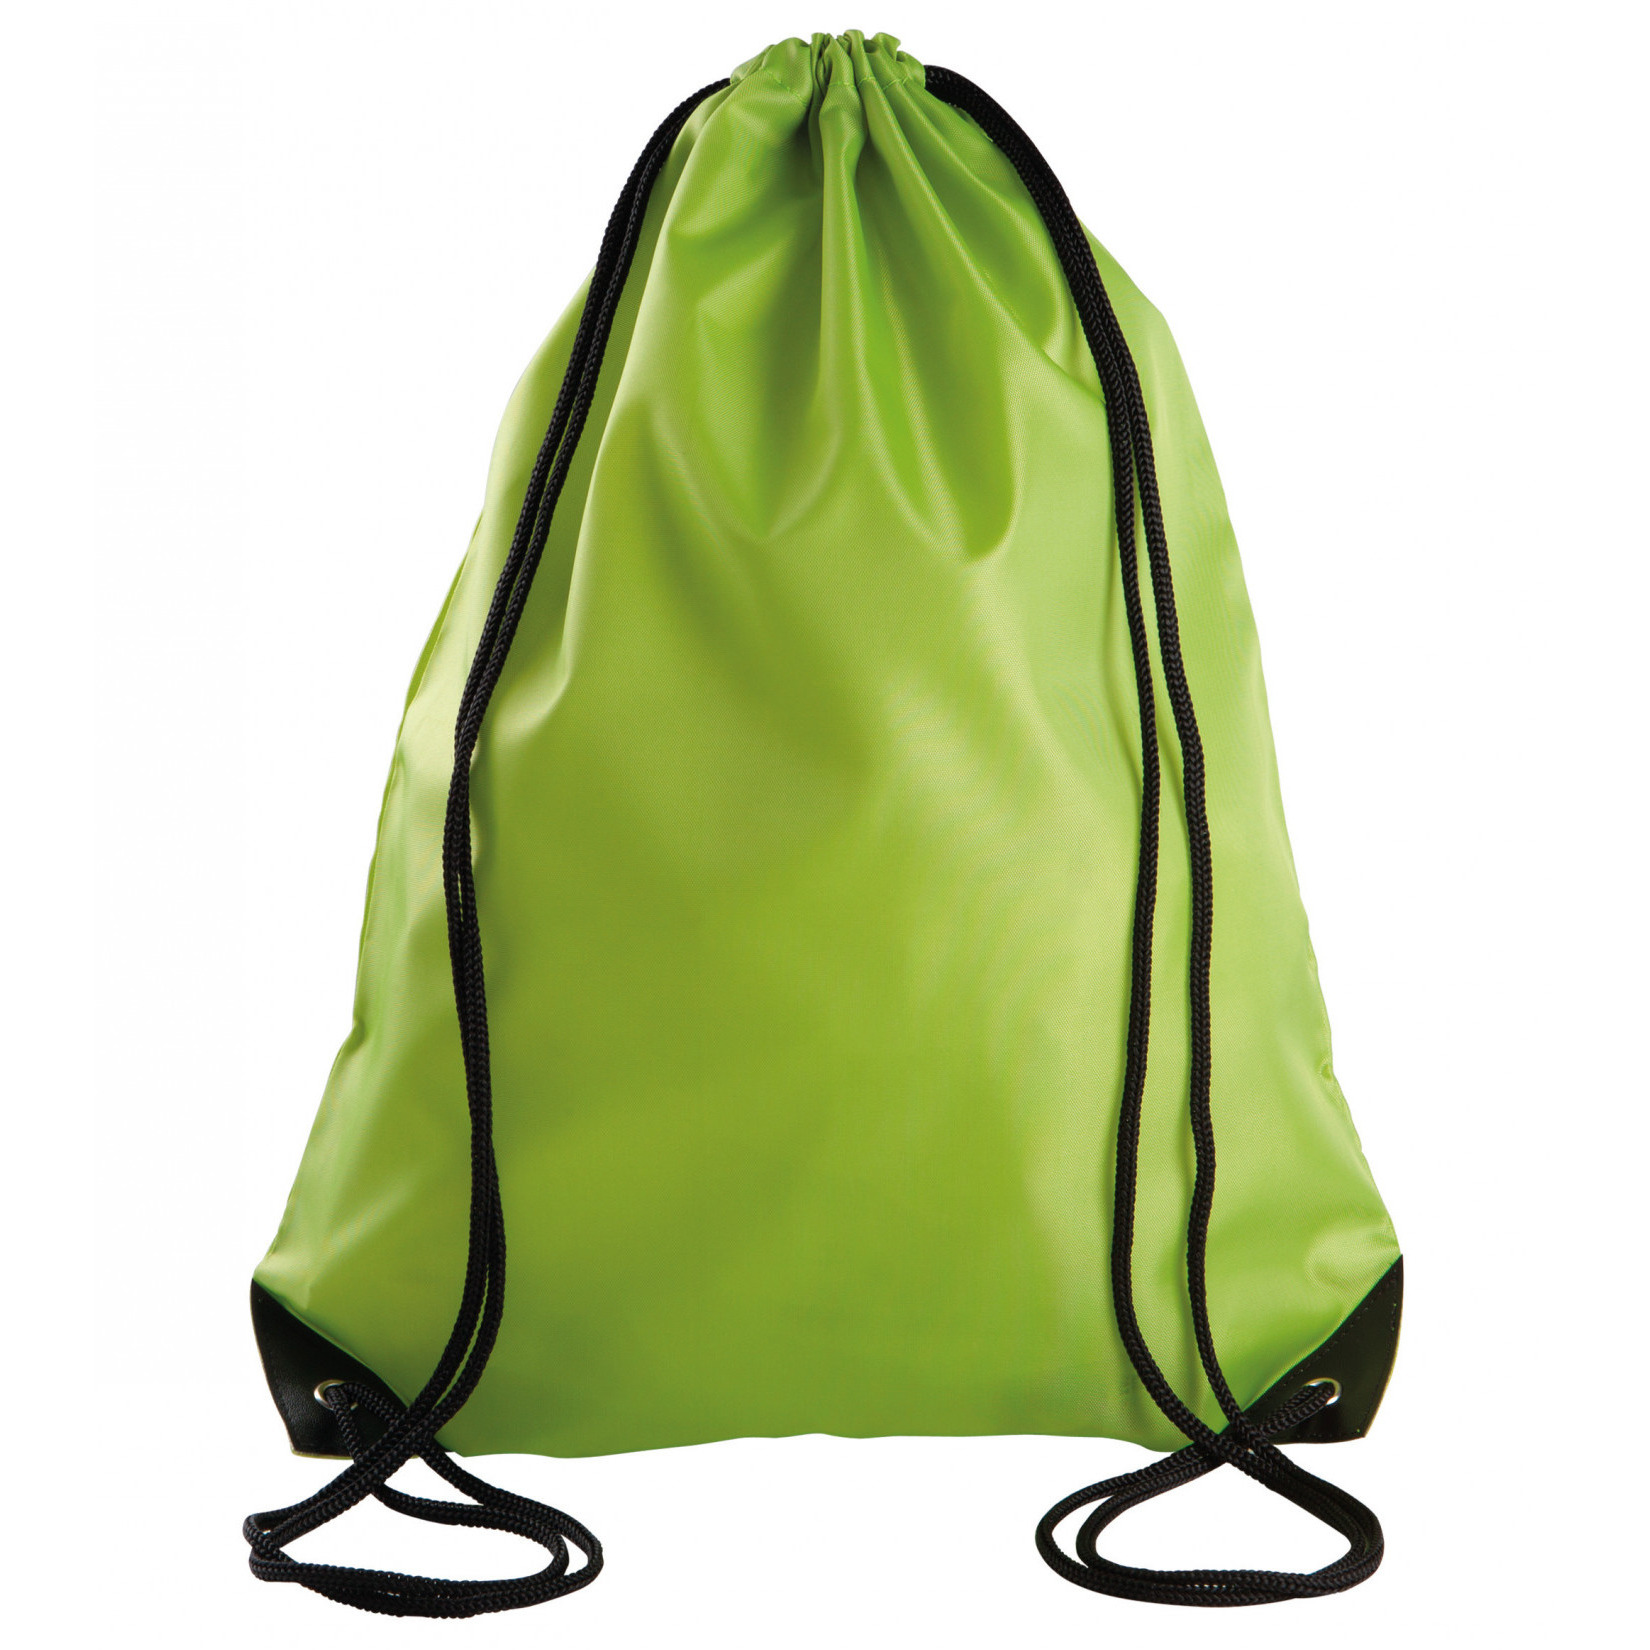 Afbeelding van Sport gymtas/draagtas lime groen met rijgkoord 34 x 44 cm van polyester